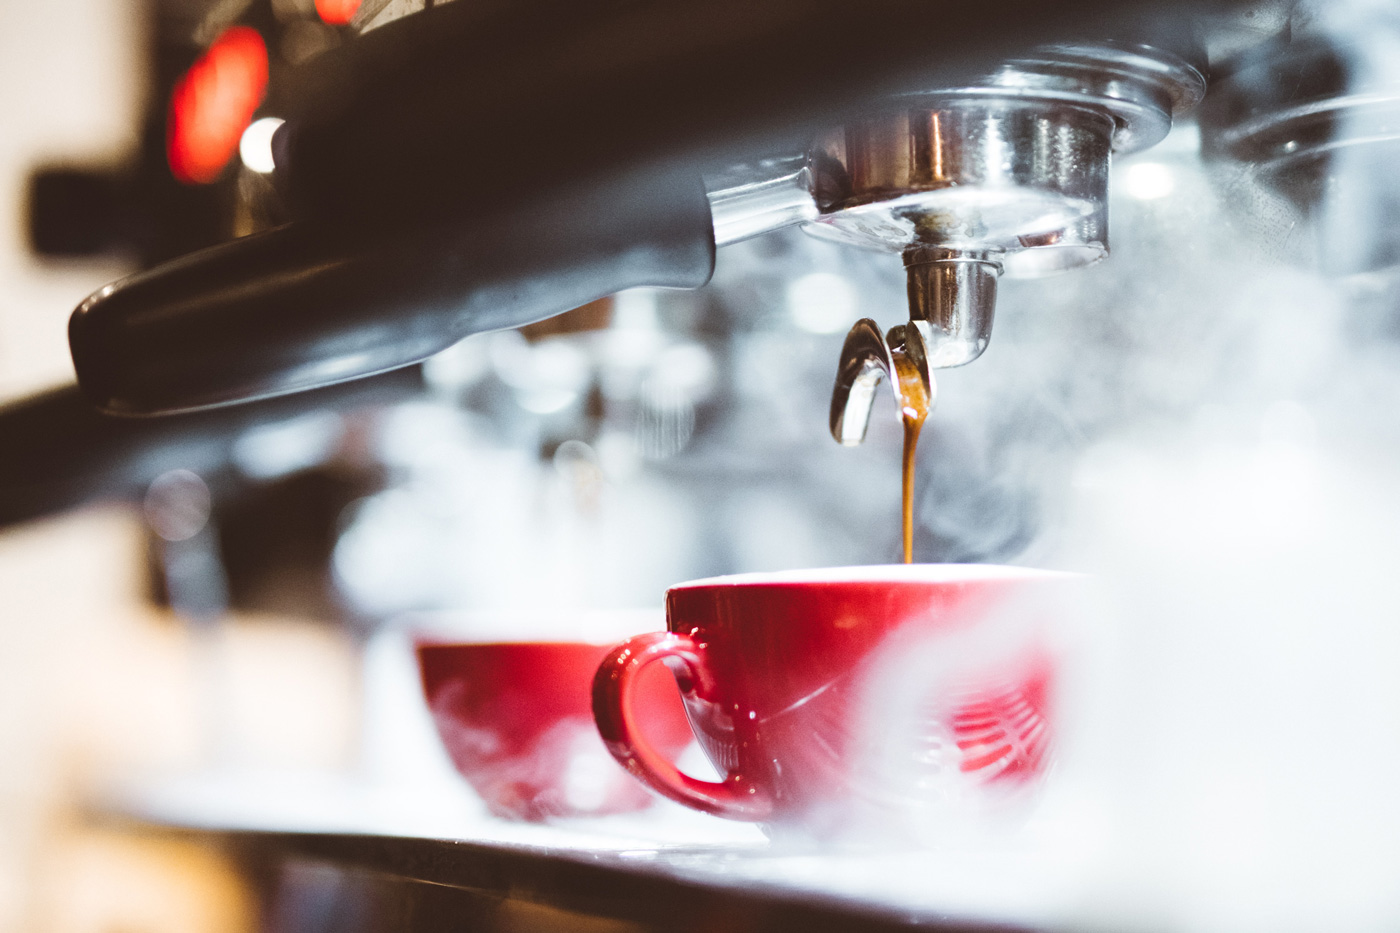 Frisch gebrühter Espresso aus einer dampfenden Siebträgermaschine